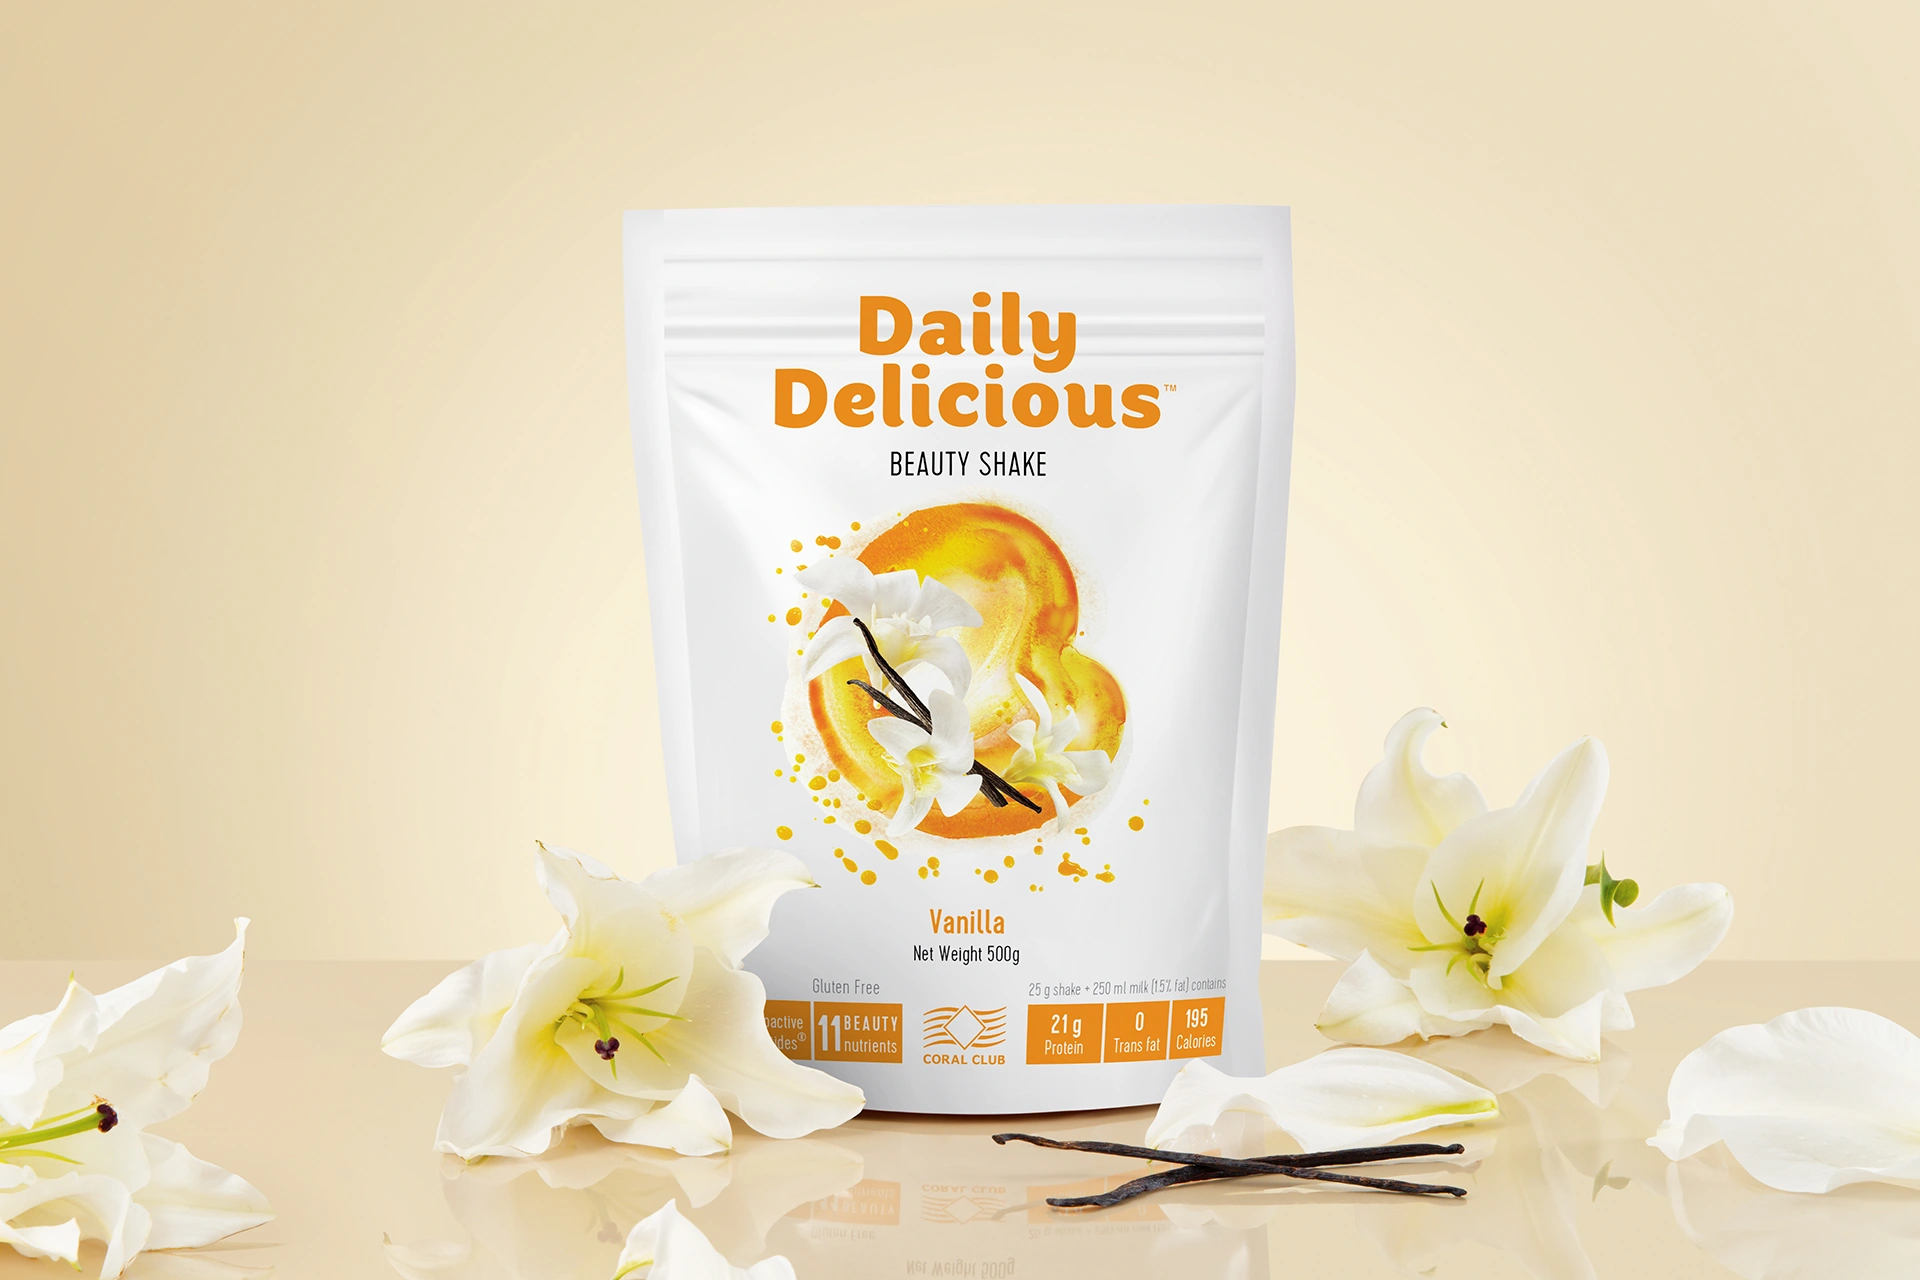  Daily Delicious Beauty Shake cu aromă de vanilie